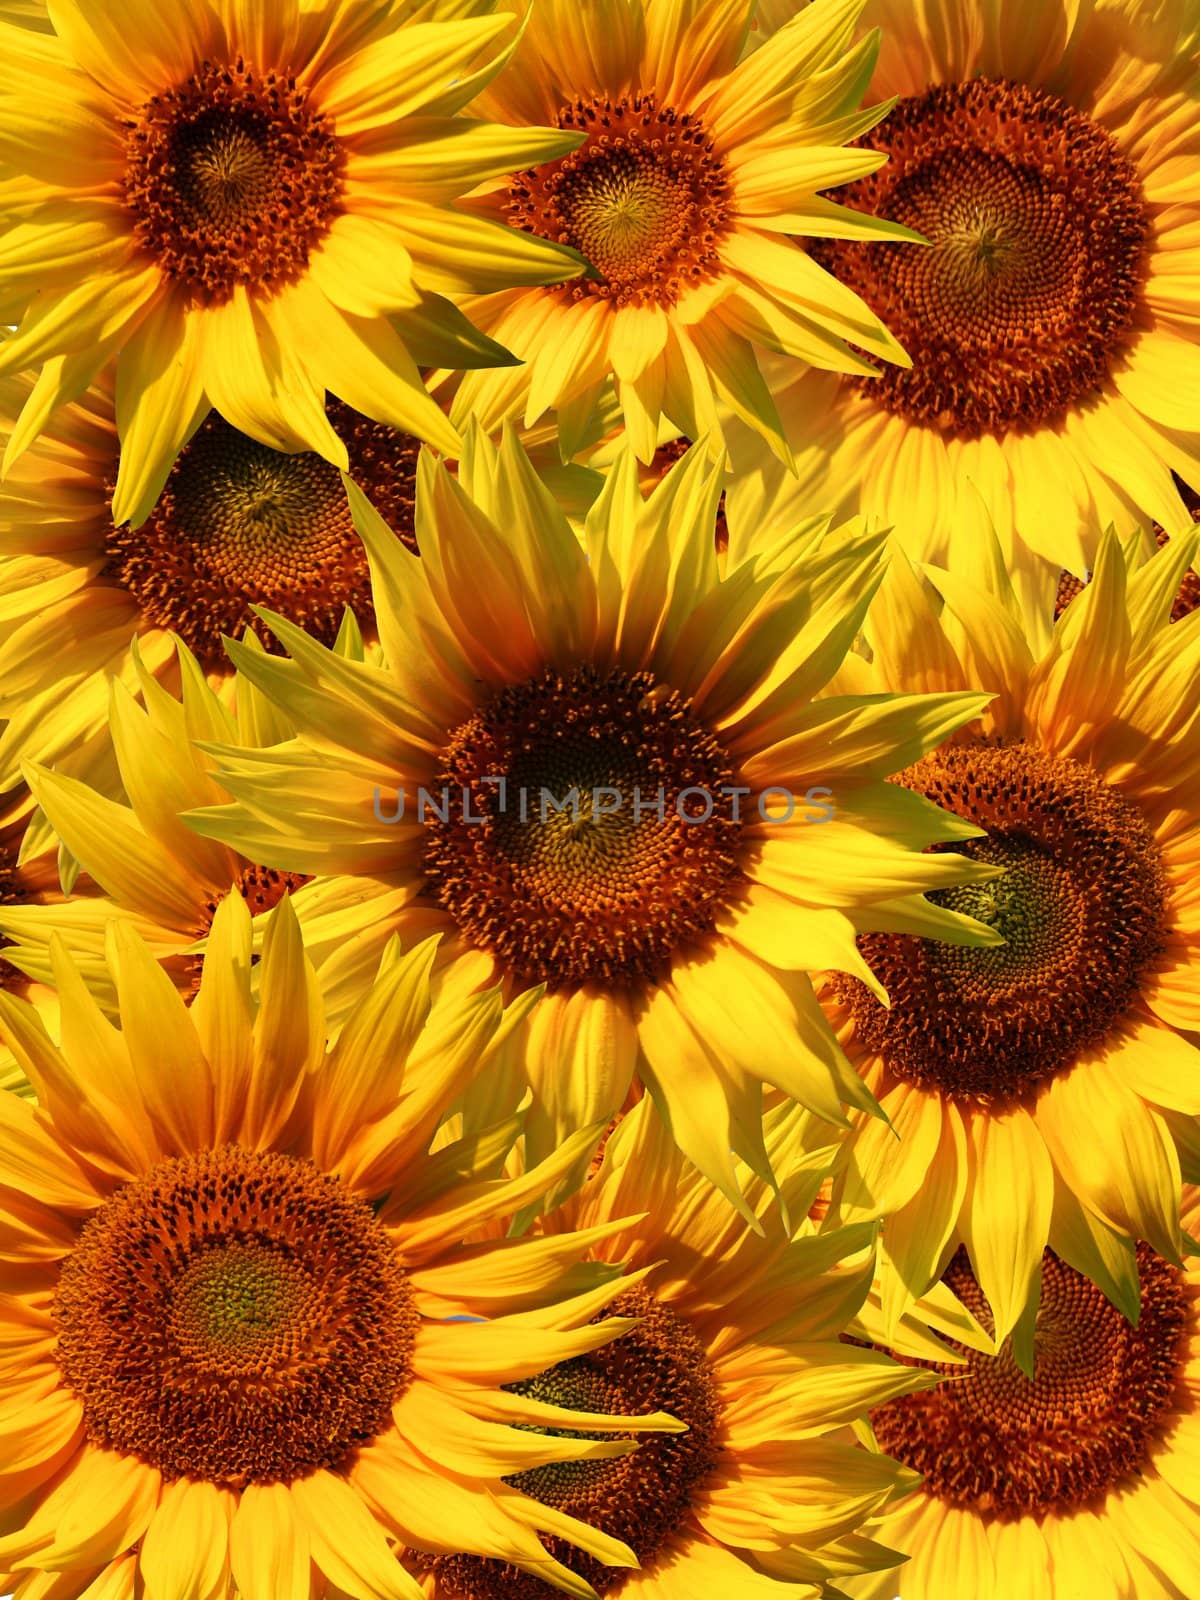 An image of beautiful yellow Sunflower petals closeup